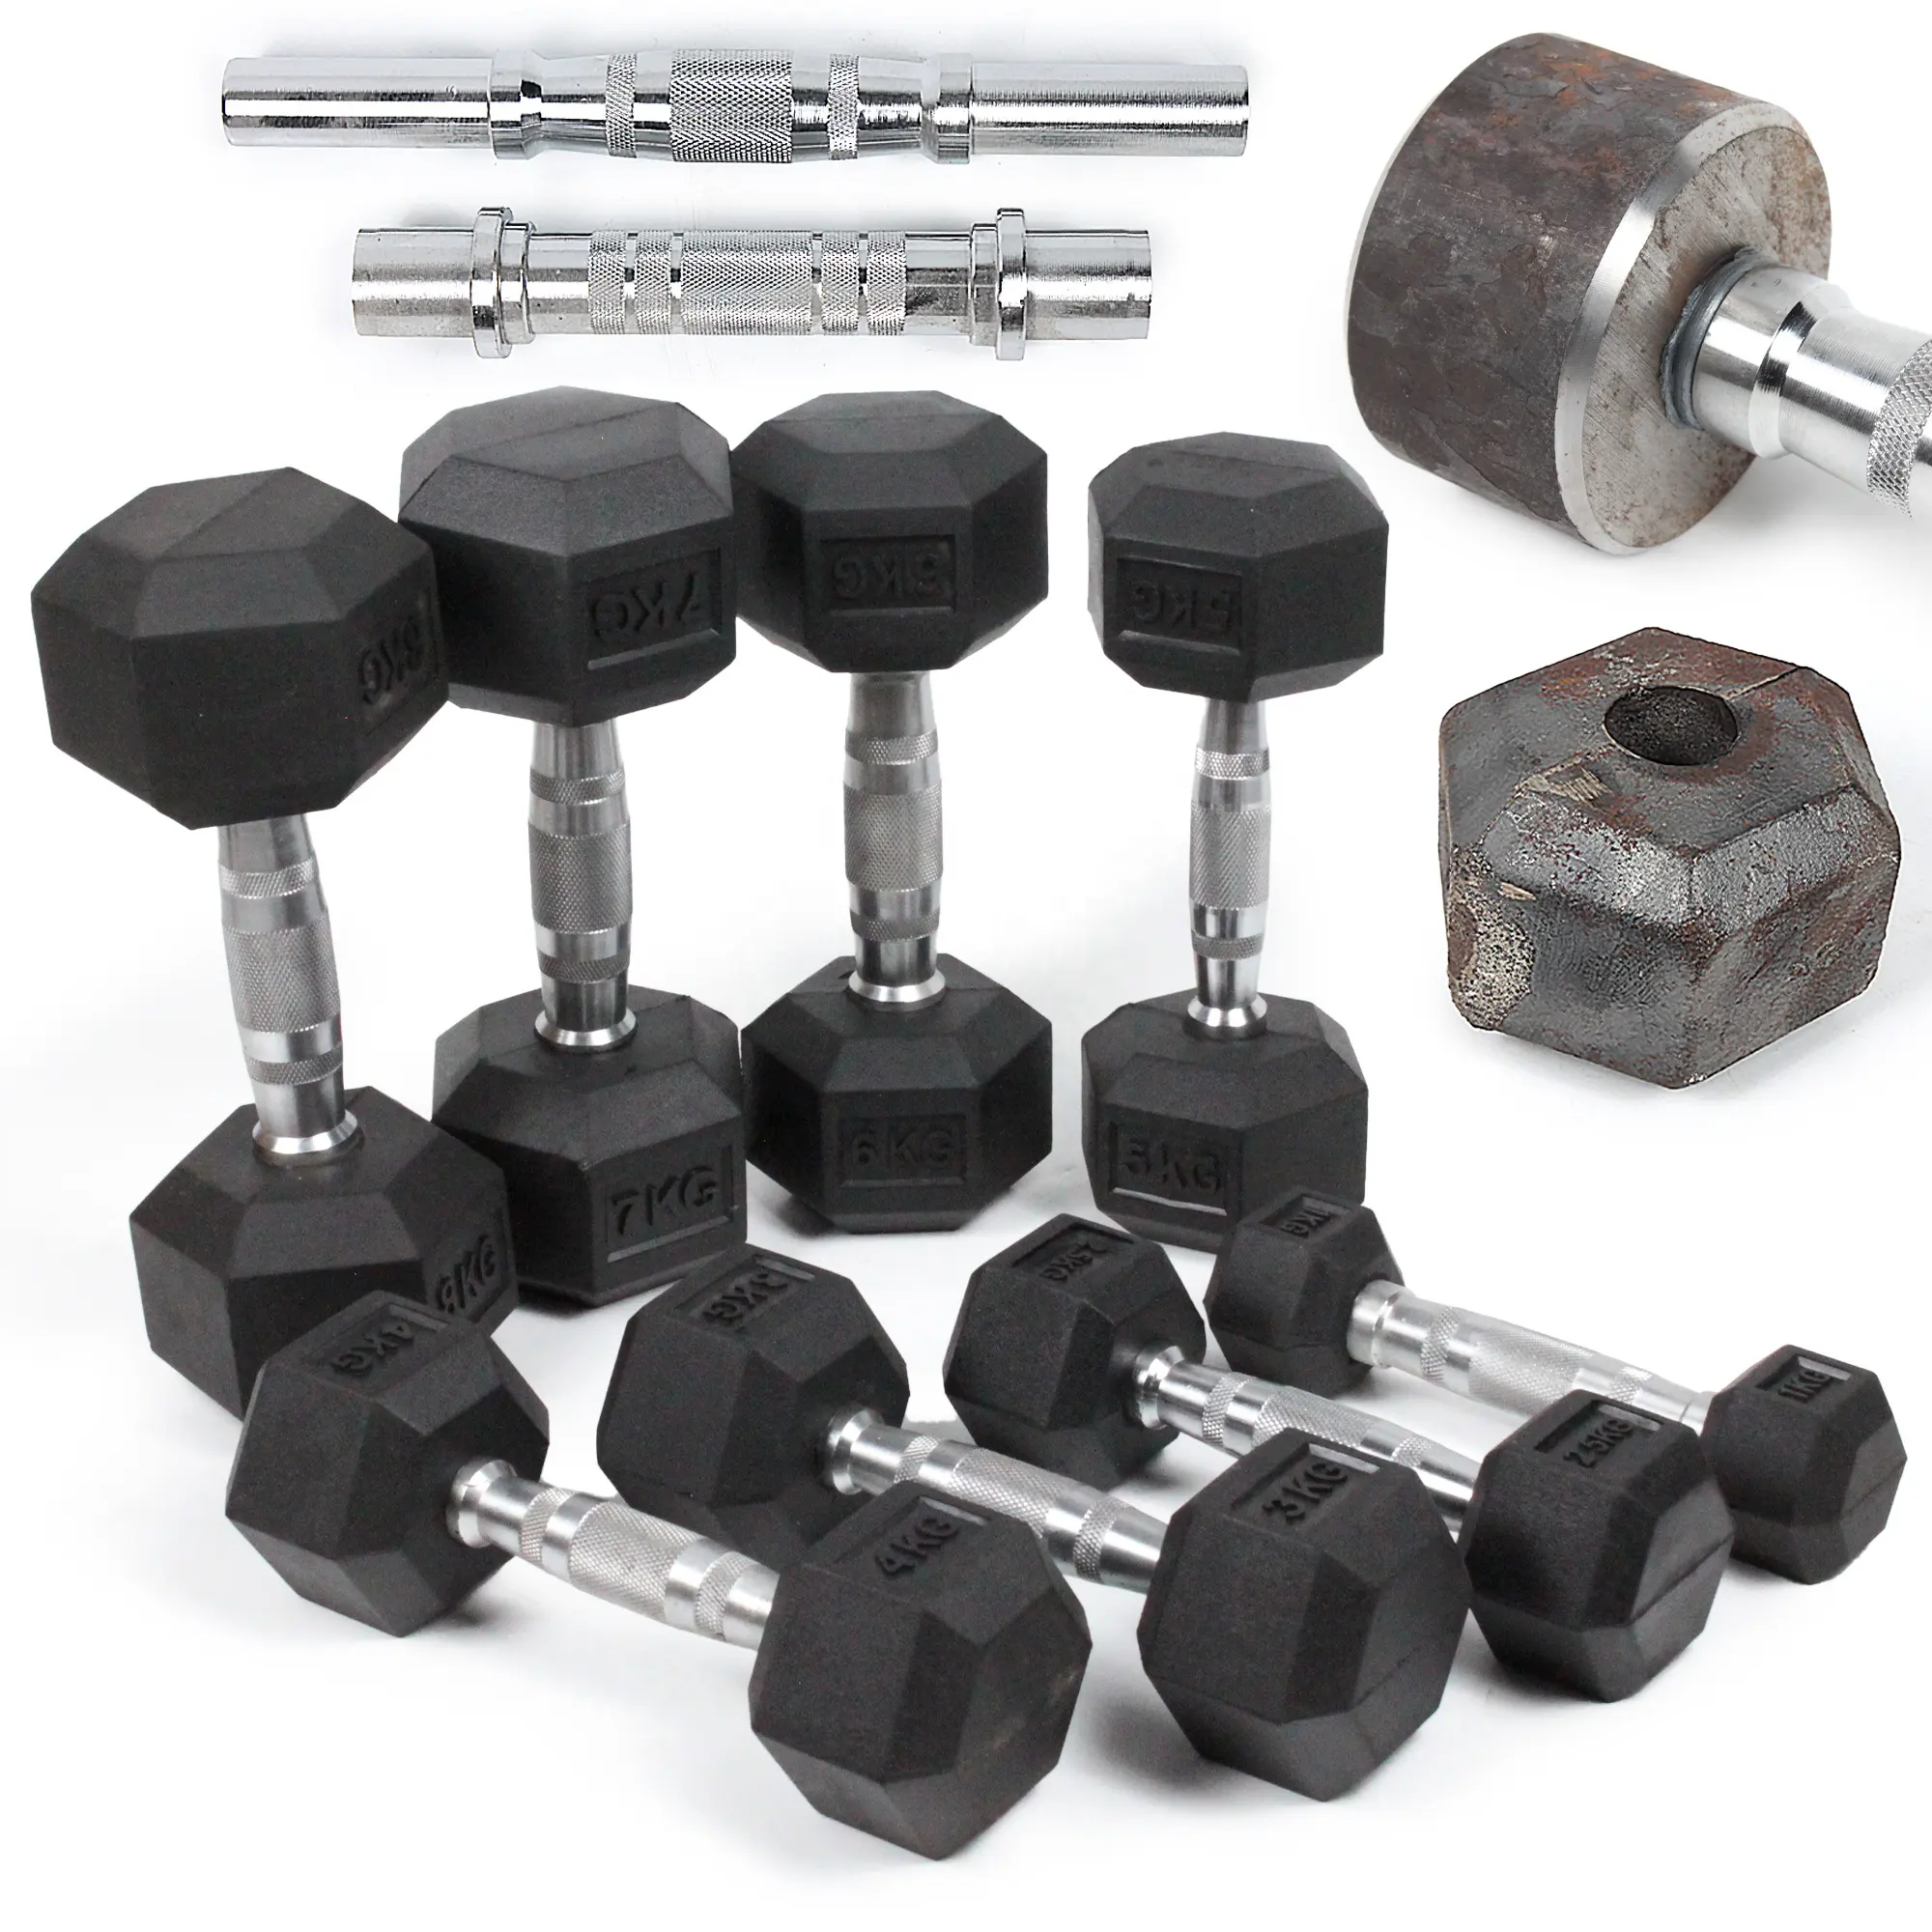 Set Dumbbell Kit Gym 5-110LBS, dilapisi besi cor krom baru dalam LBS untuk Gym